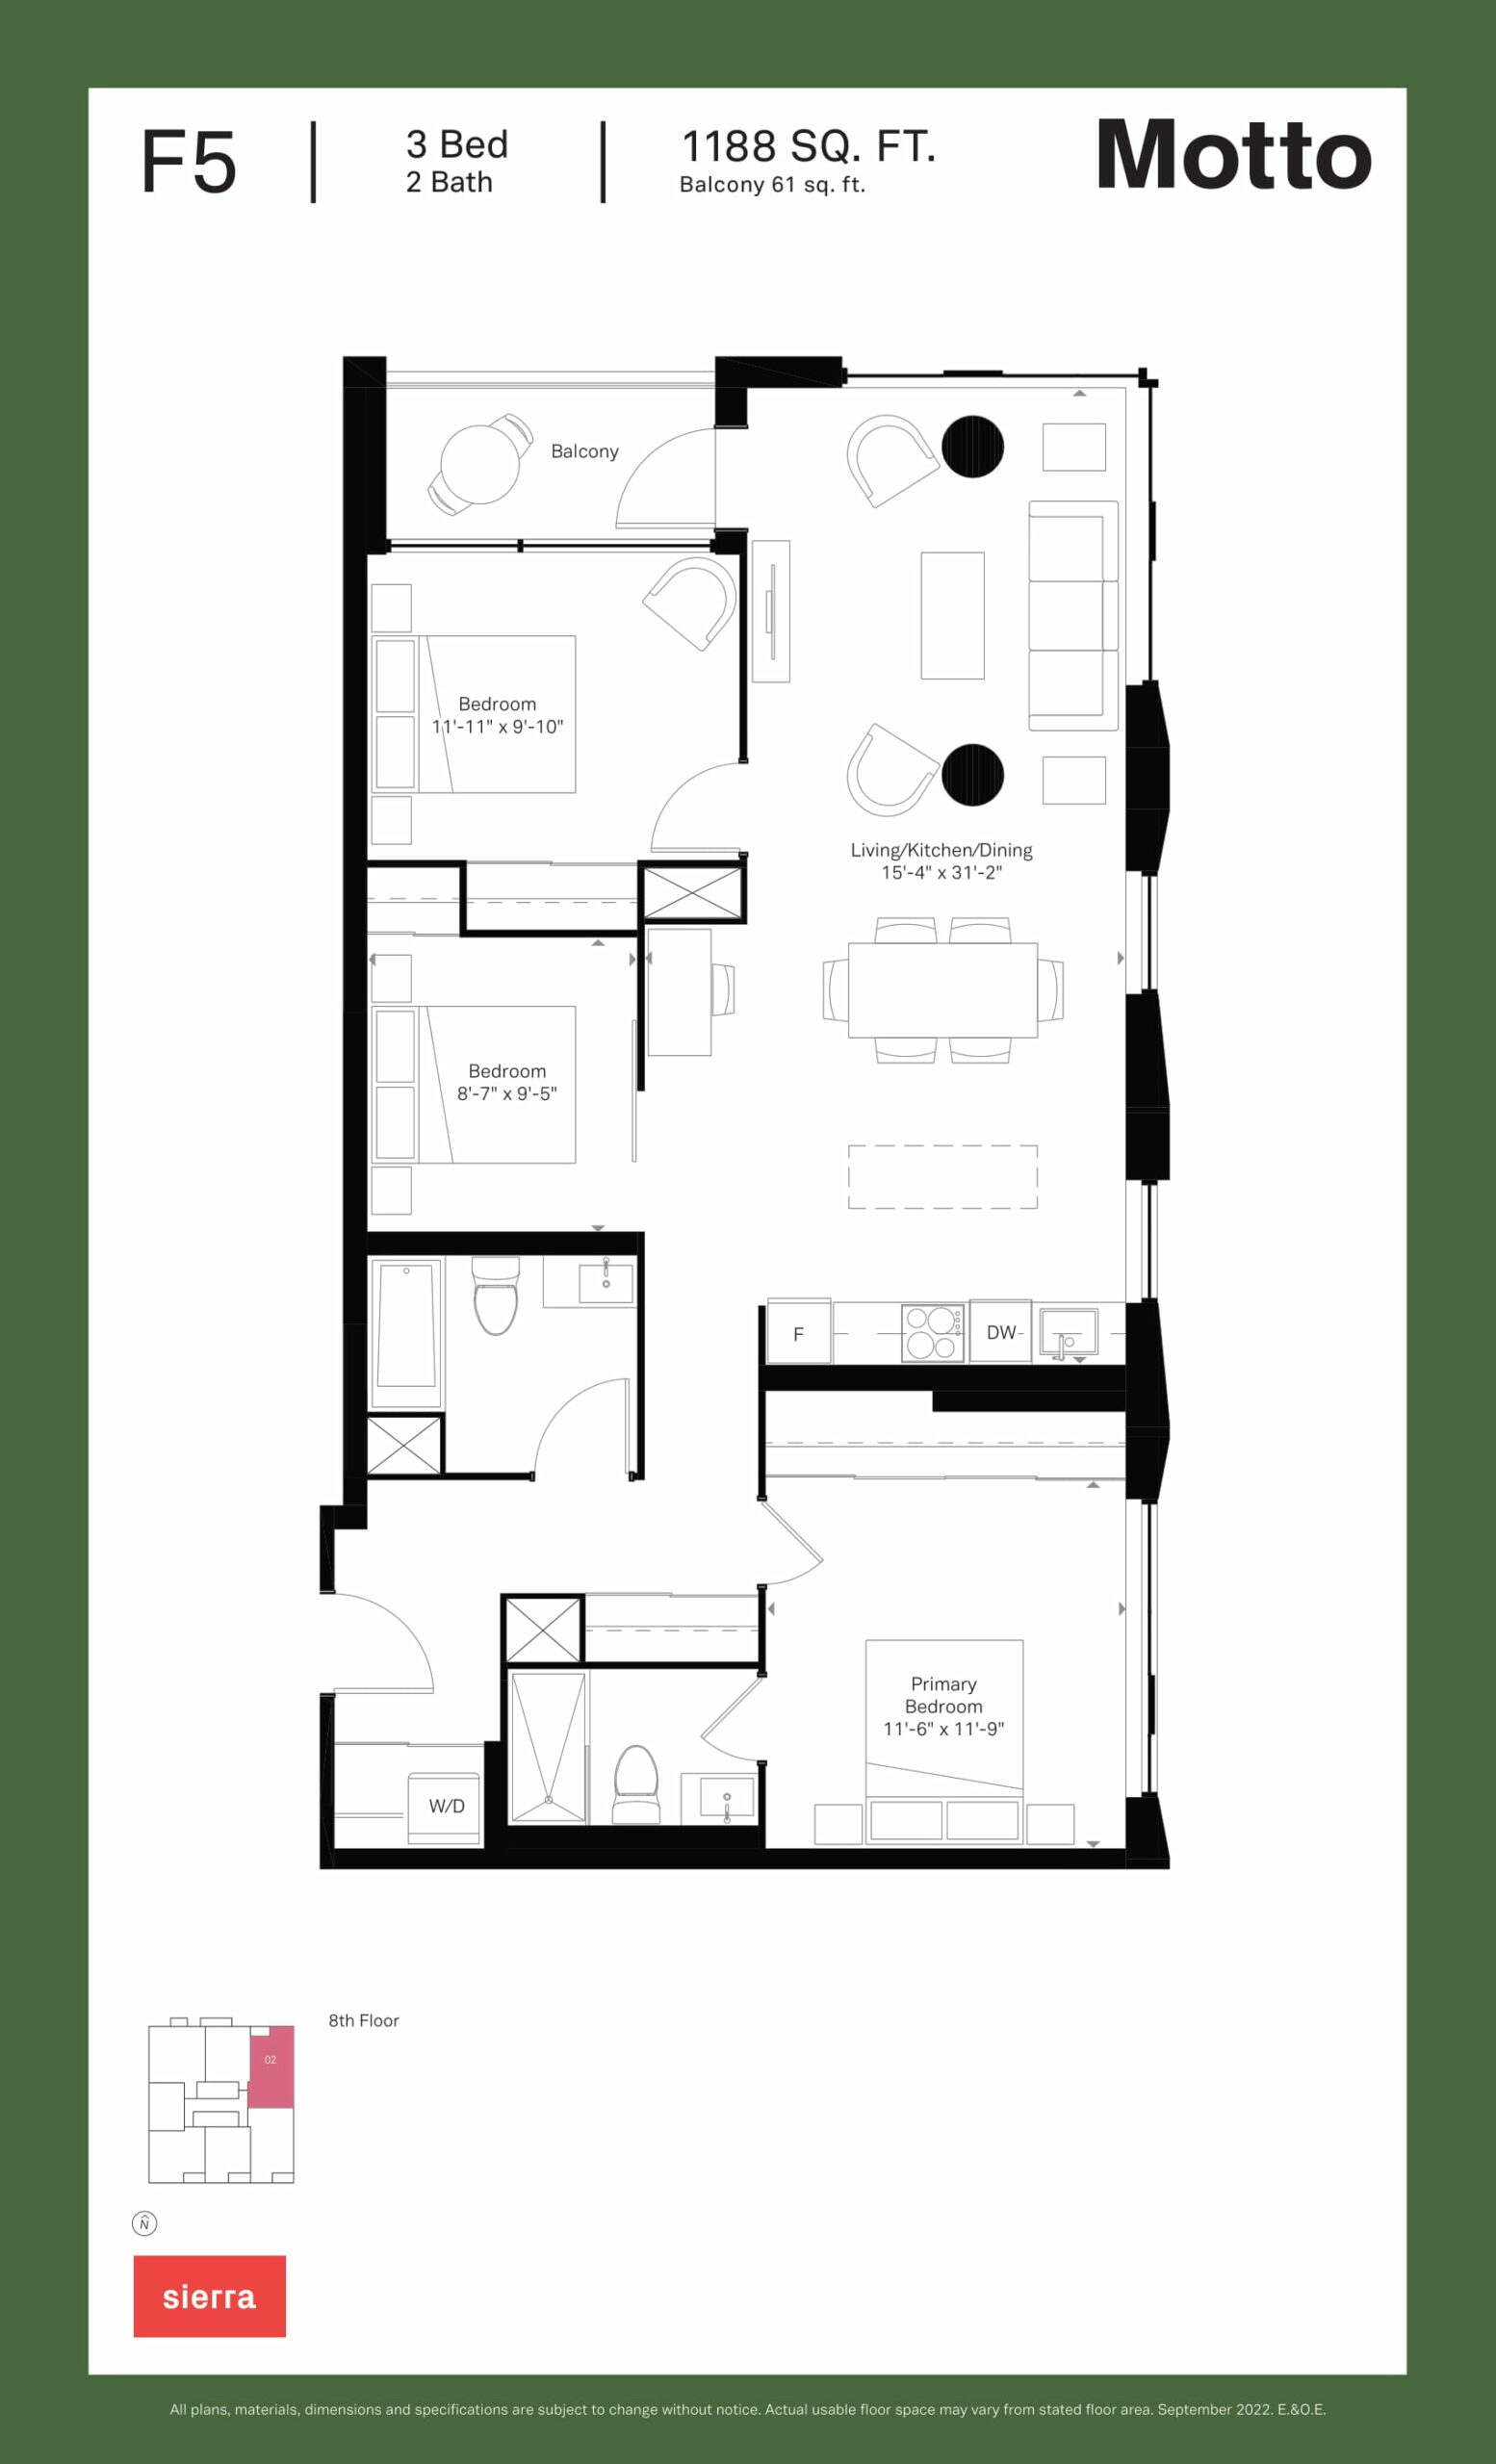 Motto - Floor Plans-26